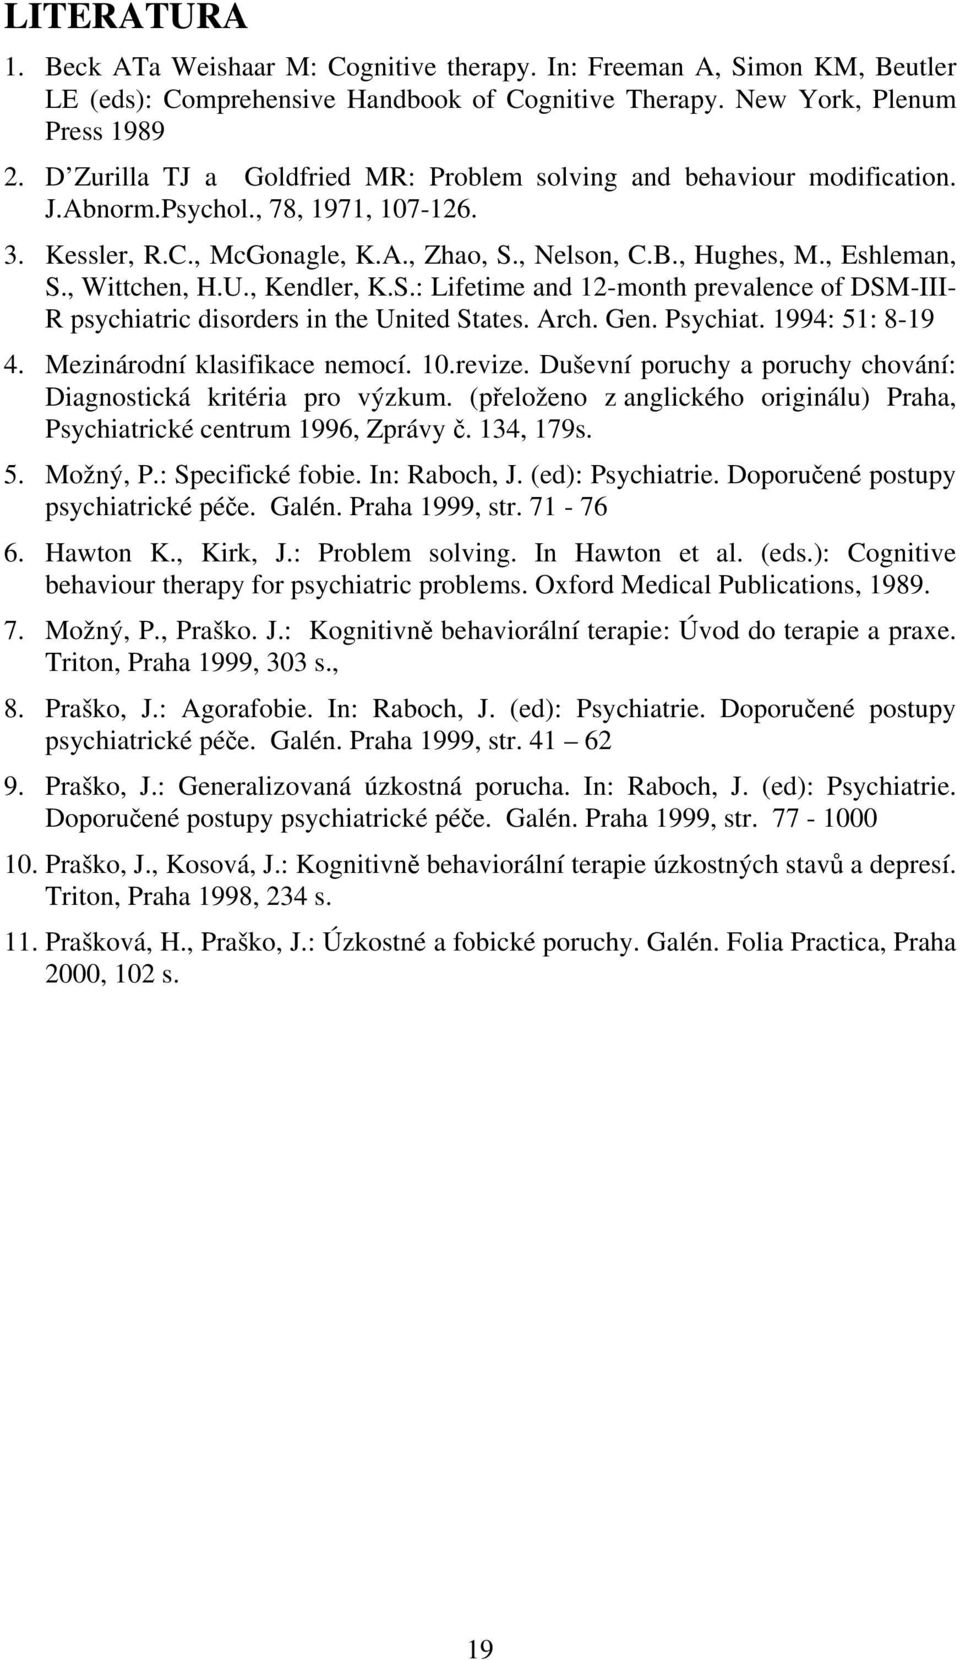 , Wittchen, H.U., Kendler, K.S.: Lifetime and 12-month prevalence of DSM-III- R psychiatric disorders in the United States. Arch. Gen. Psychiat. 1994: 51: 8-19 4. Mezinárodní klasifikace nemocí. 10.